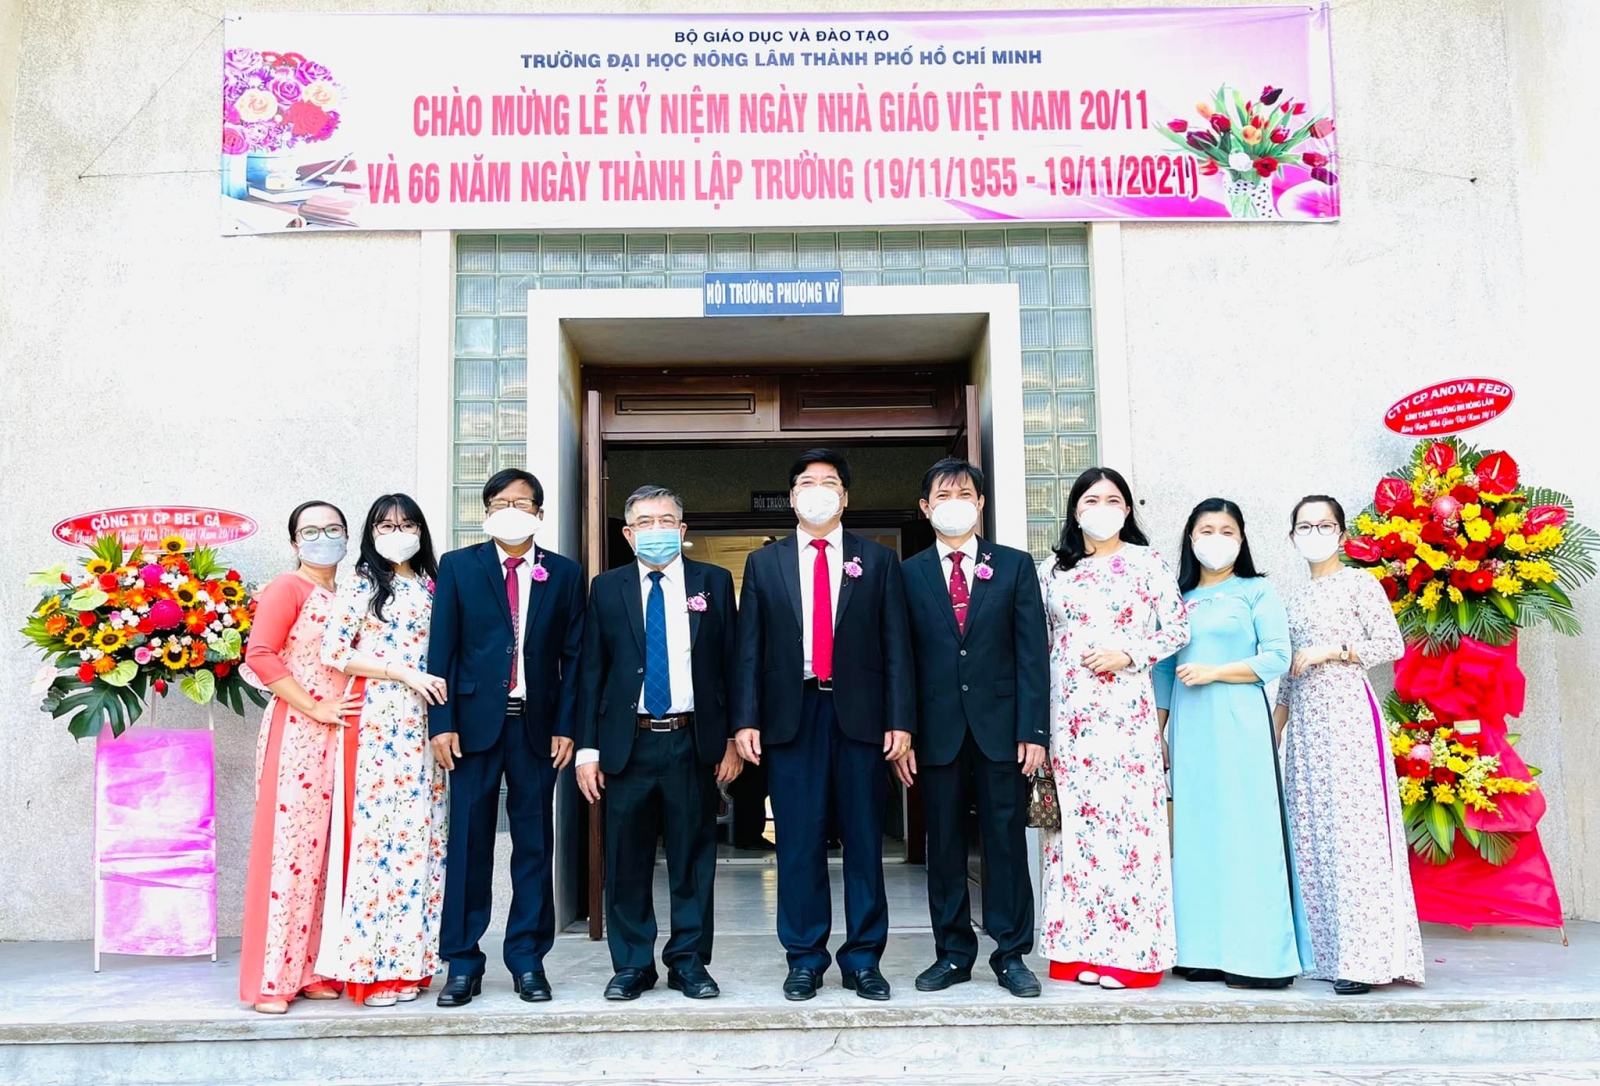 Trường Đại học Nông Lâm TPHCM kỉ niệm Ngày Nhà giáo Việt Nam - Ảnh minh hoạ 2